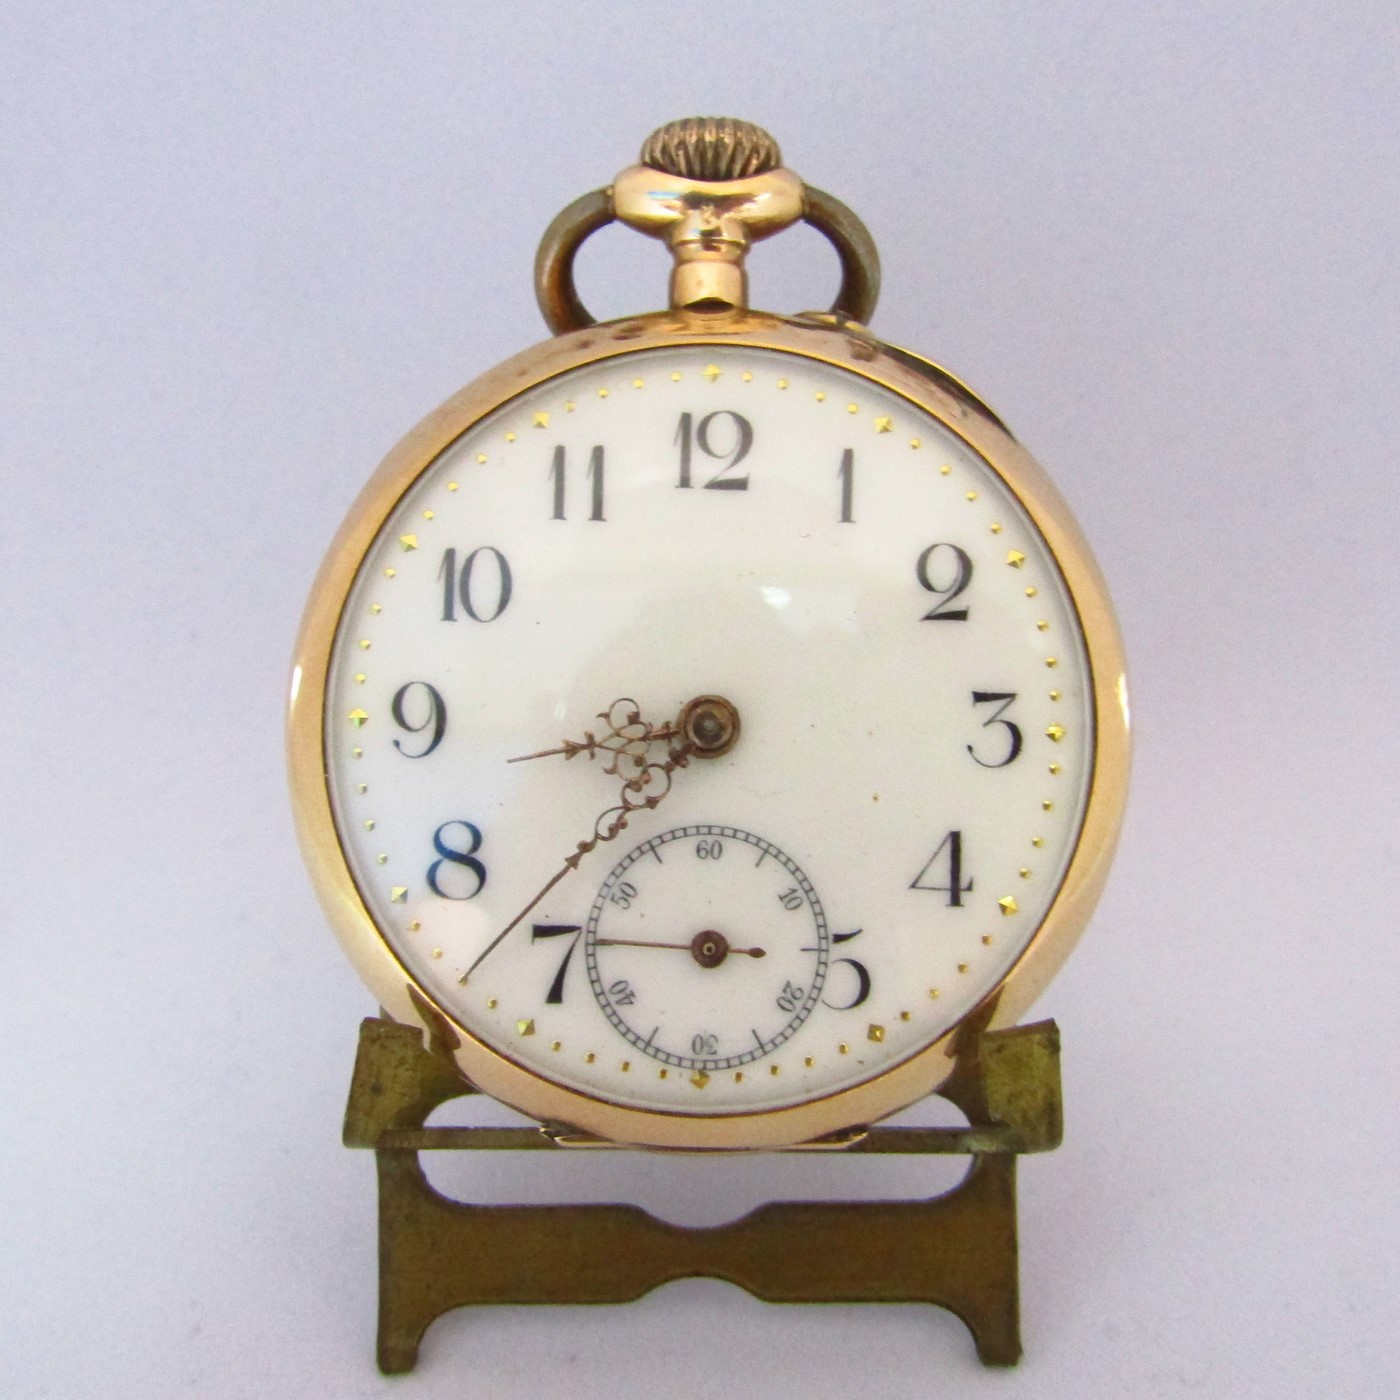 Reloj de Bolsillo, lepine y remontoir, oro 14k. Suiza, Ca. 1900